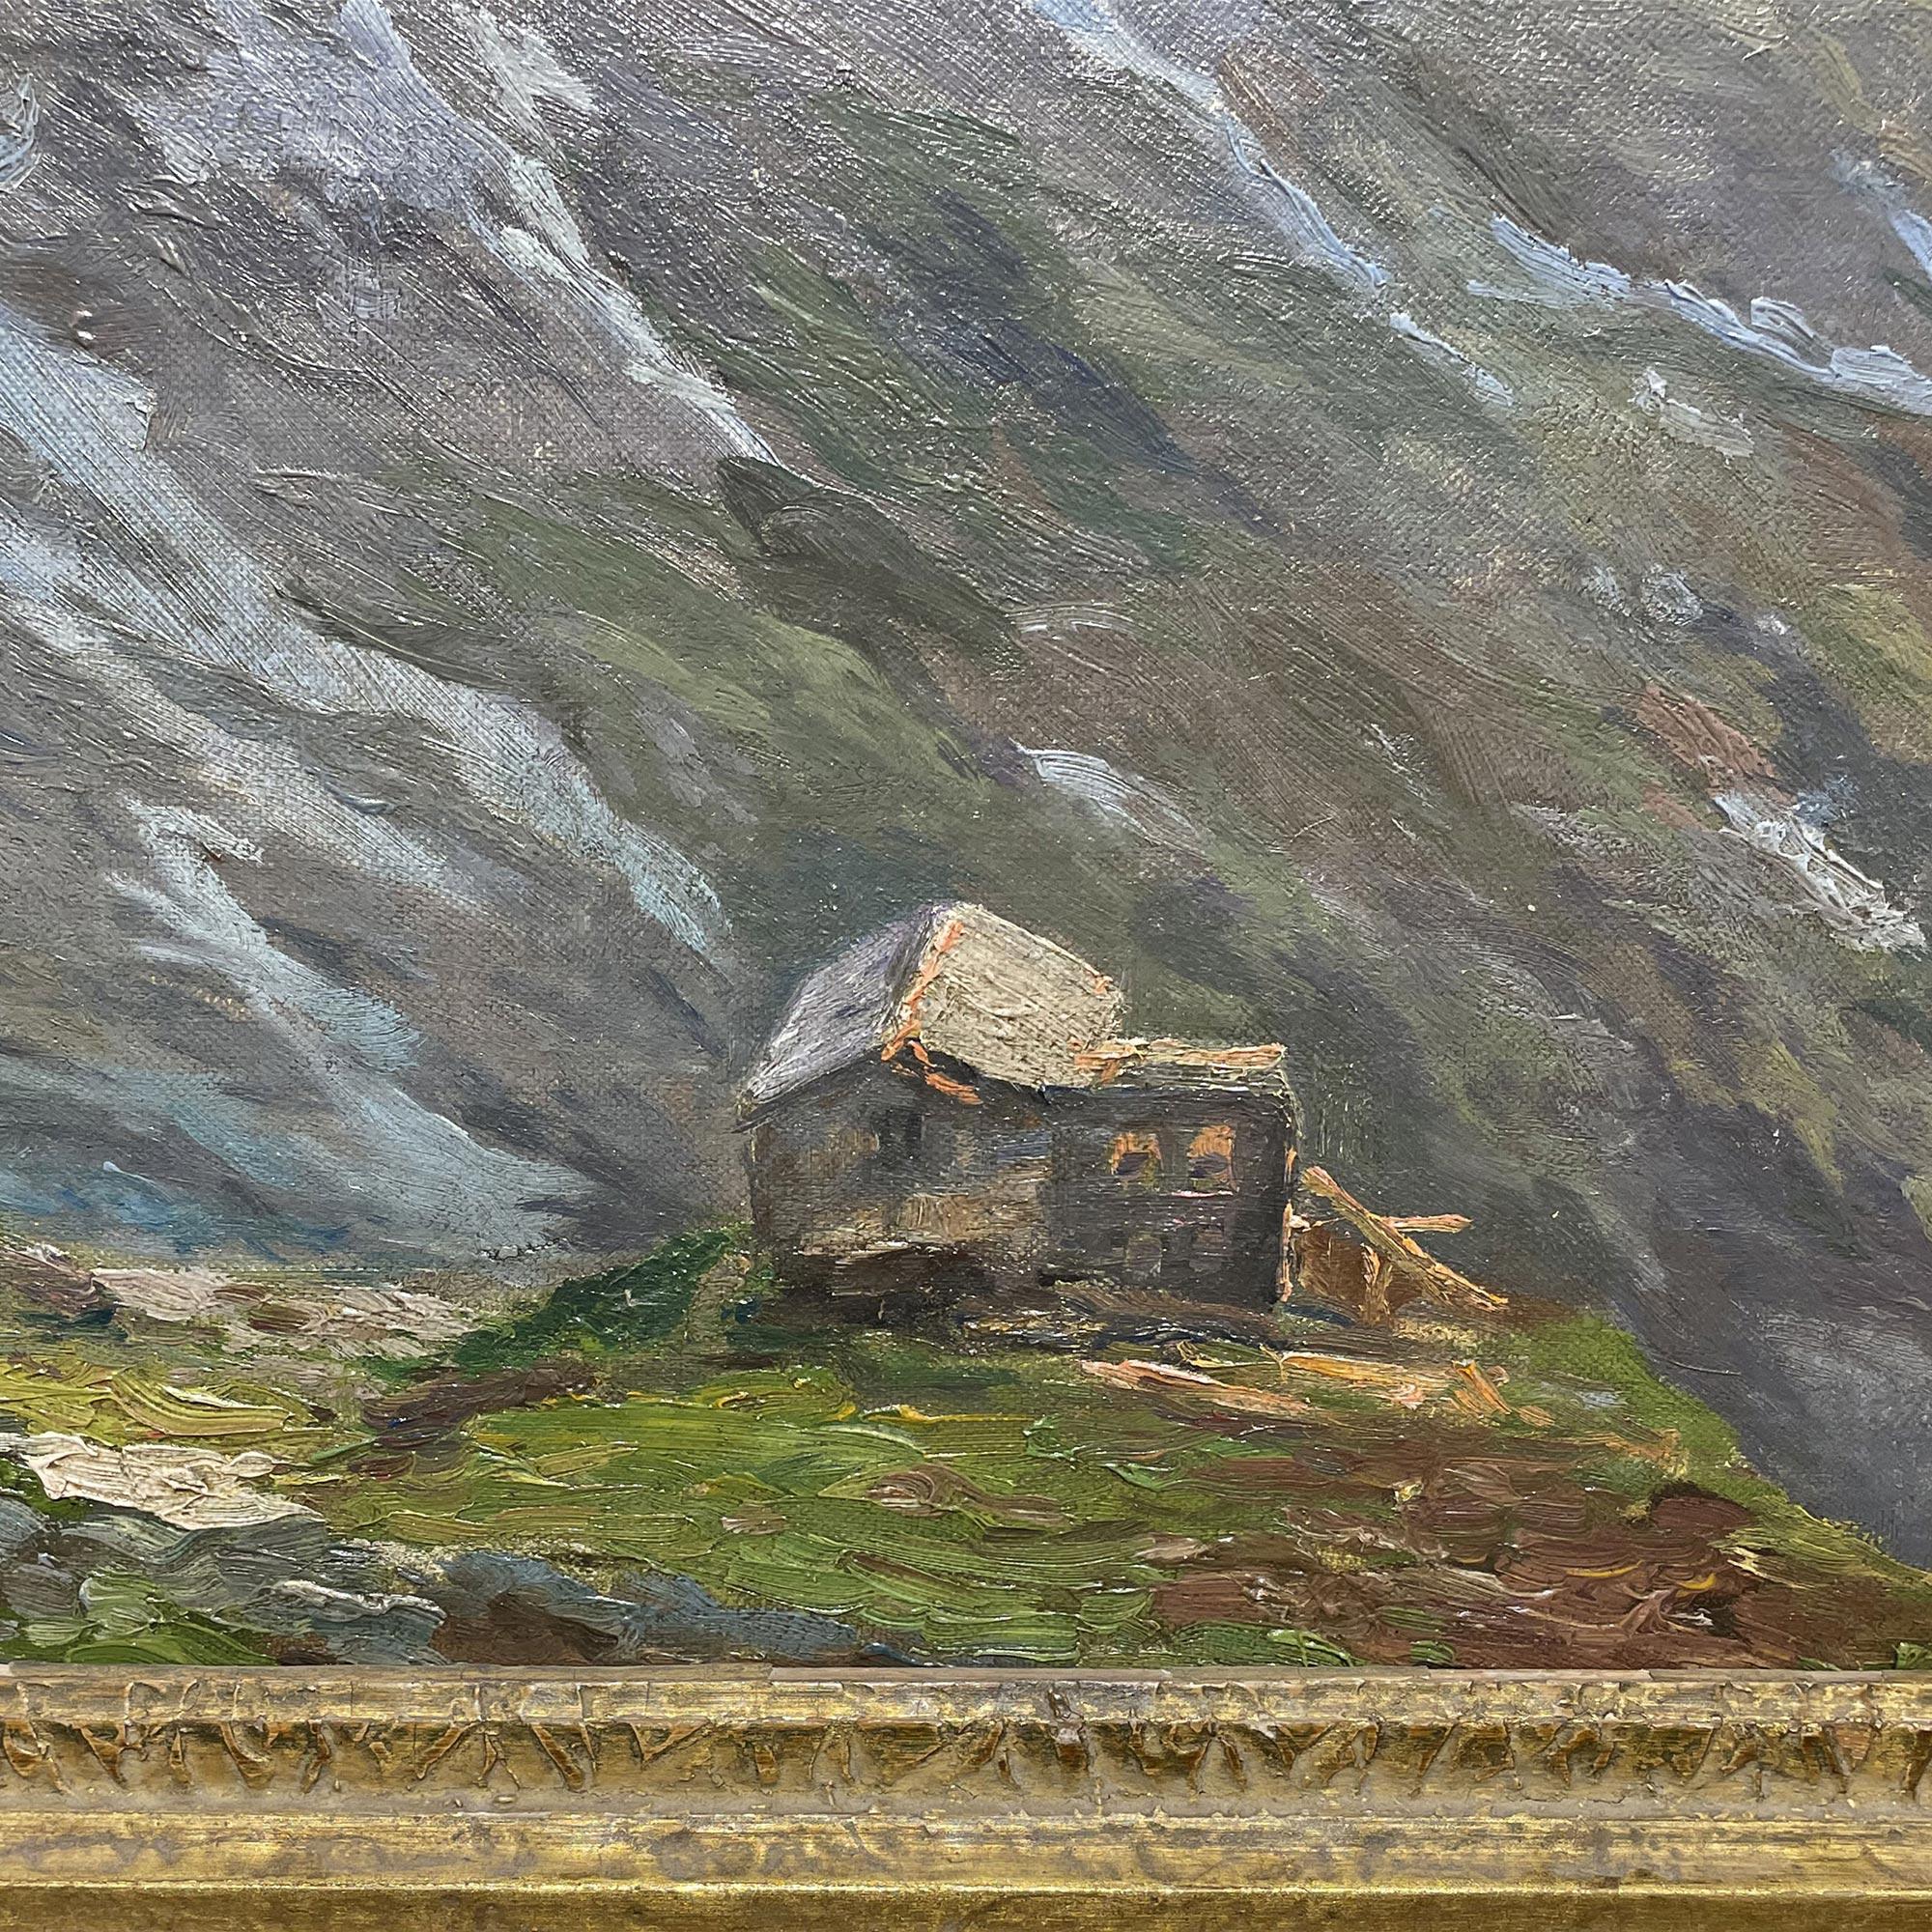 Refuge en Engadine - 1930

47 cm x 57 cm sans cadre
57 x 67 cm avec cadre en sapin ancien
huile sur panneau - vers 1930

Belle peinture riche en matière, aux couleurs vives et lumineuses.
Un refuge en haute montagne à la fin du printemps.

Au dos,